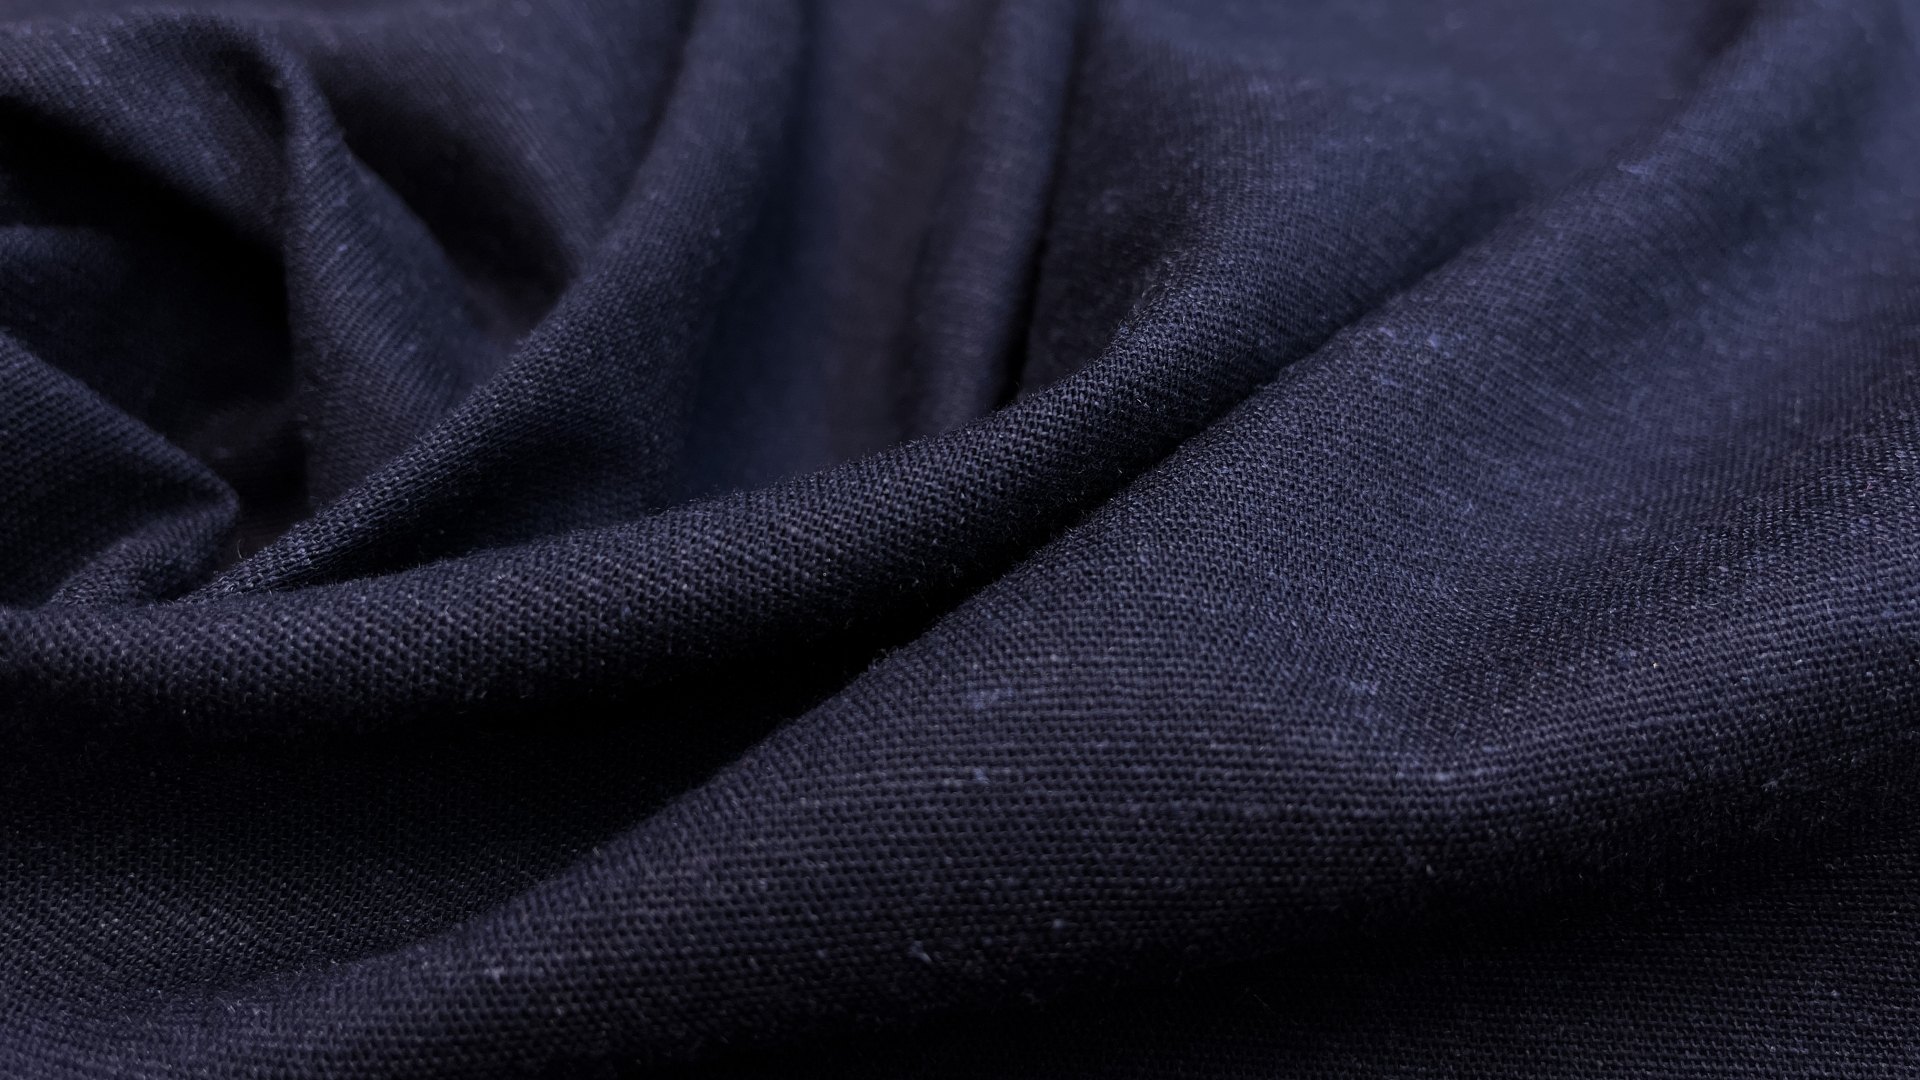 Льняное с вискозой полотно  темно-синего цвета. Полотняная выработка, в основе пластичен, не сухой и не шершавый. Не светится. Можно шить и прямую классику, и свободный крой. Идеально для летних брюк, рубашек оверсайз, прямых свободных базовых платьев.